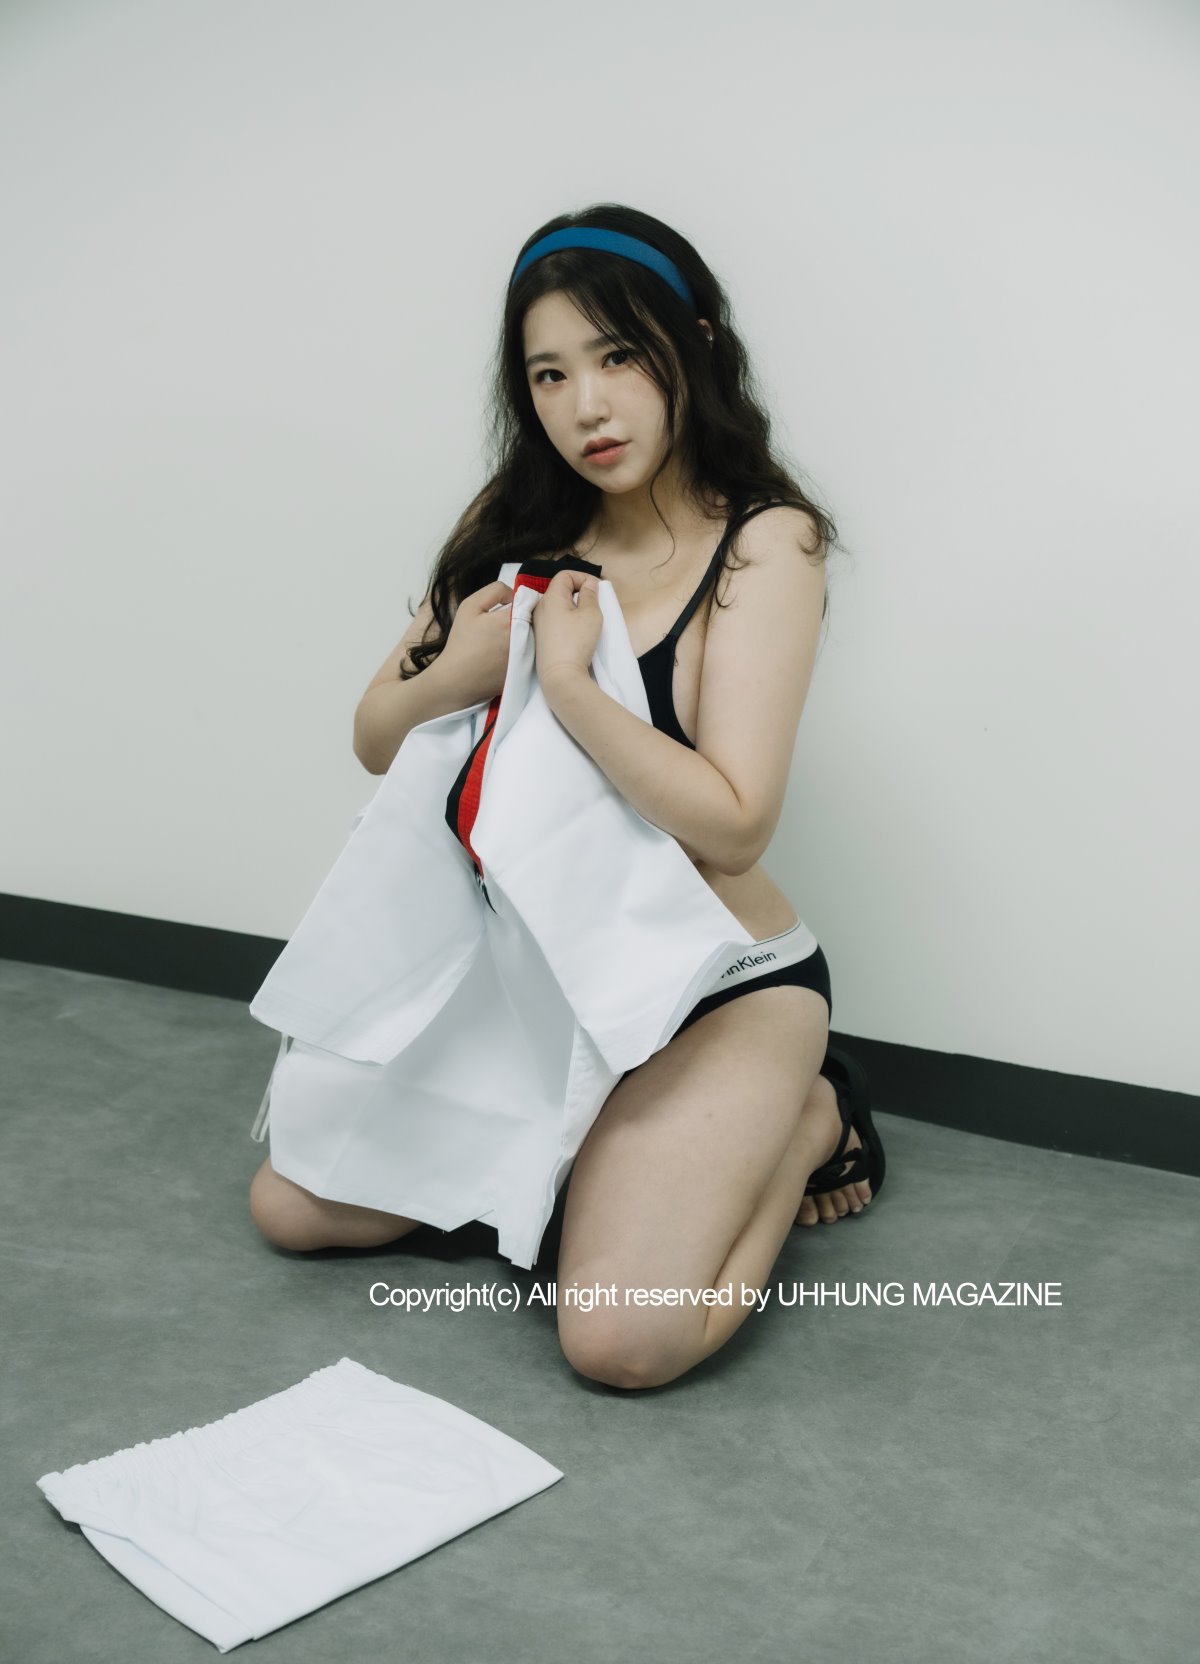 UHHUNG MAGAZINE Jenn Vol 1 Taekwondo Part1 0012 1900208303.jpg